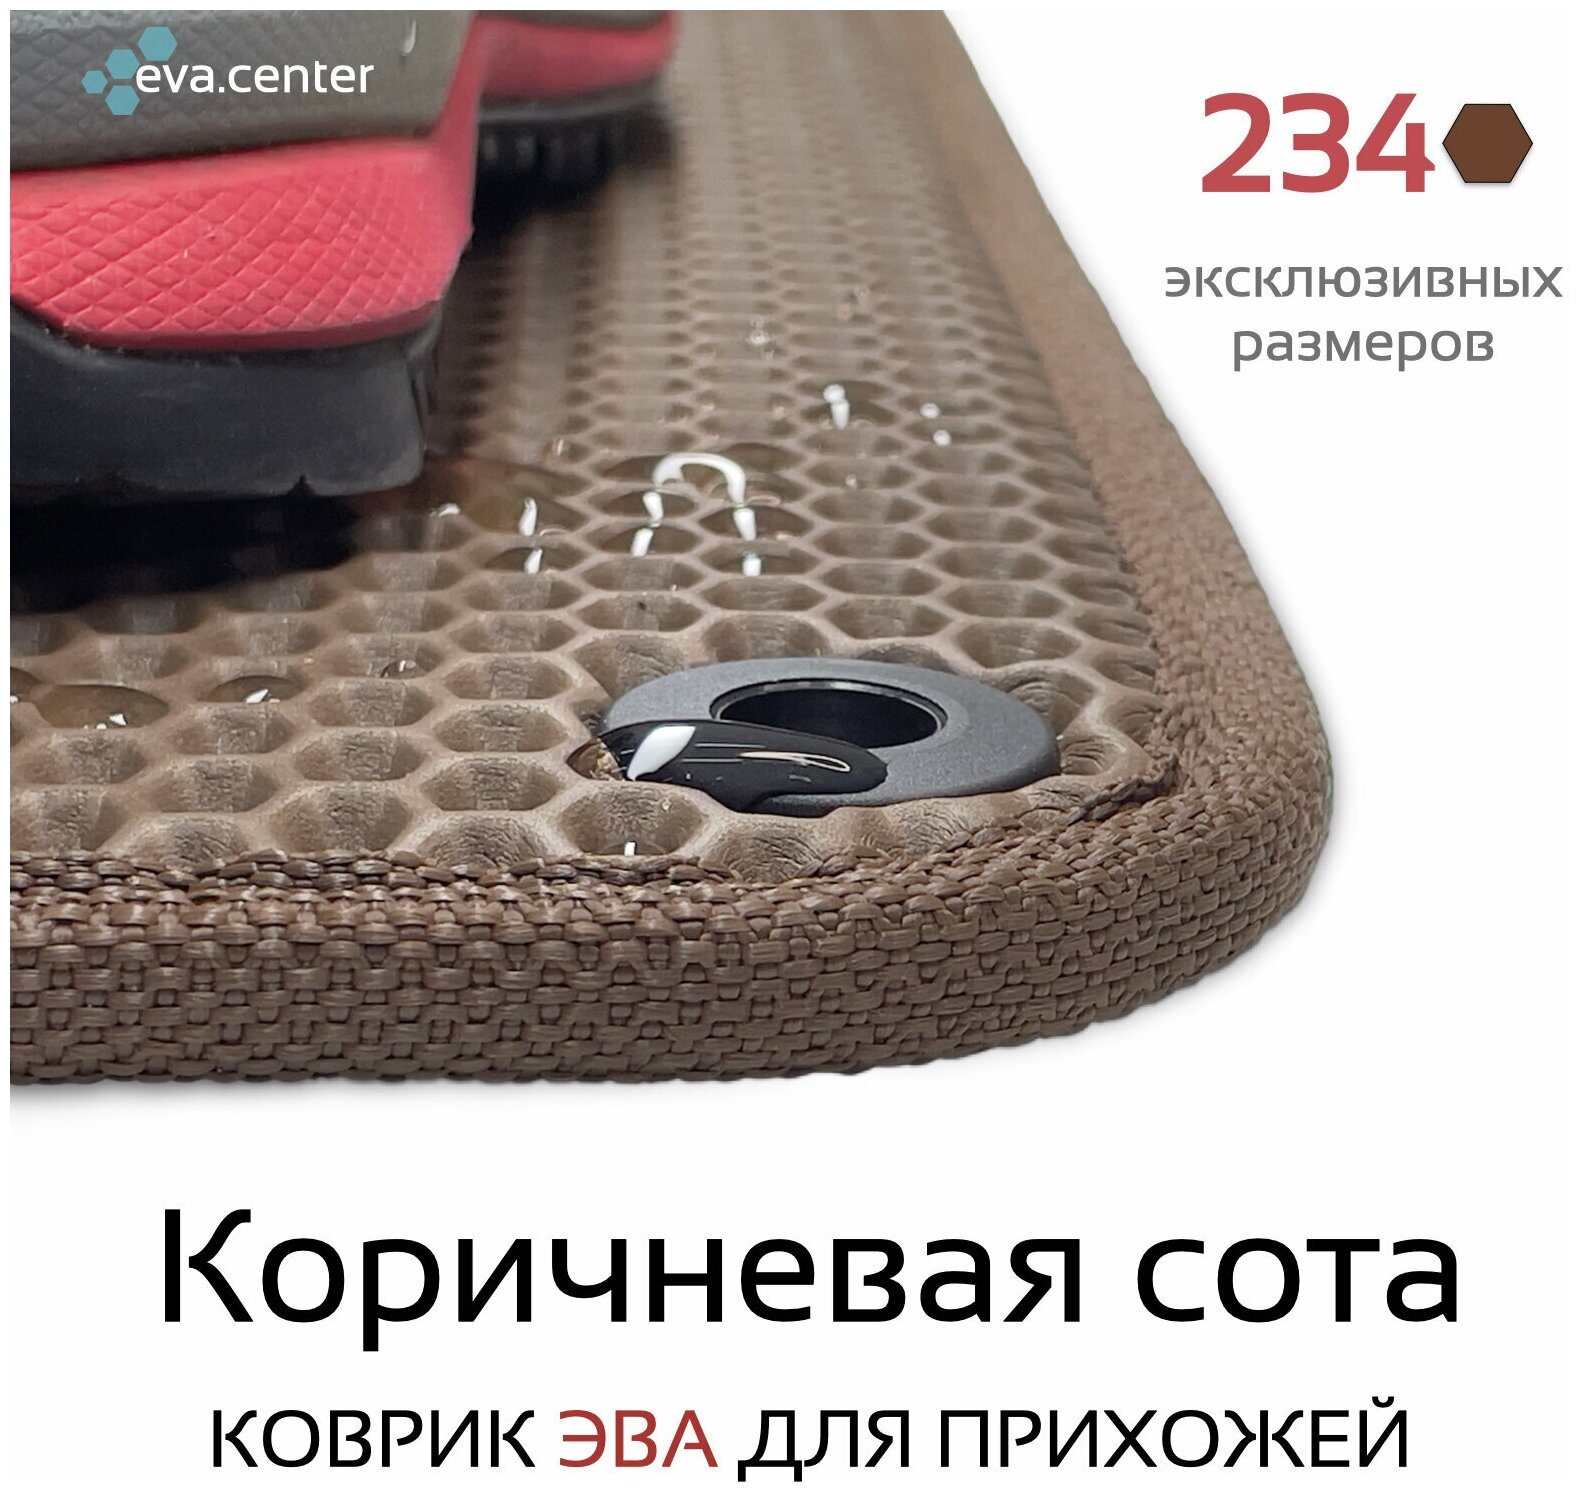 Грязезащитный придверный резиновый коврик в прихожую из EVA для обуви, для ванной, туалета, 0.45 х 1.6 м, коричневая сота - фотография № 3